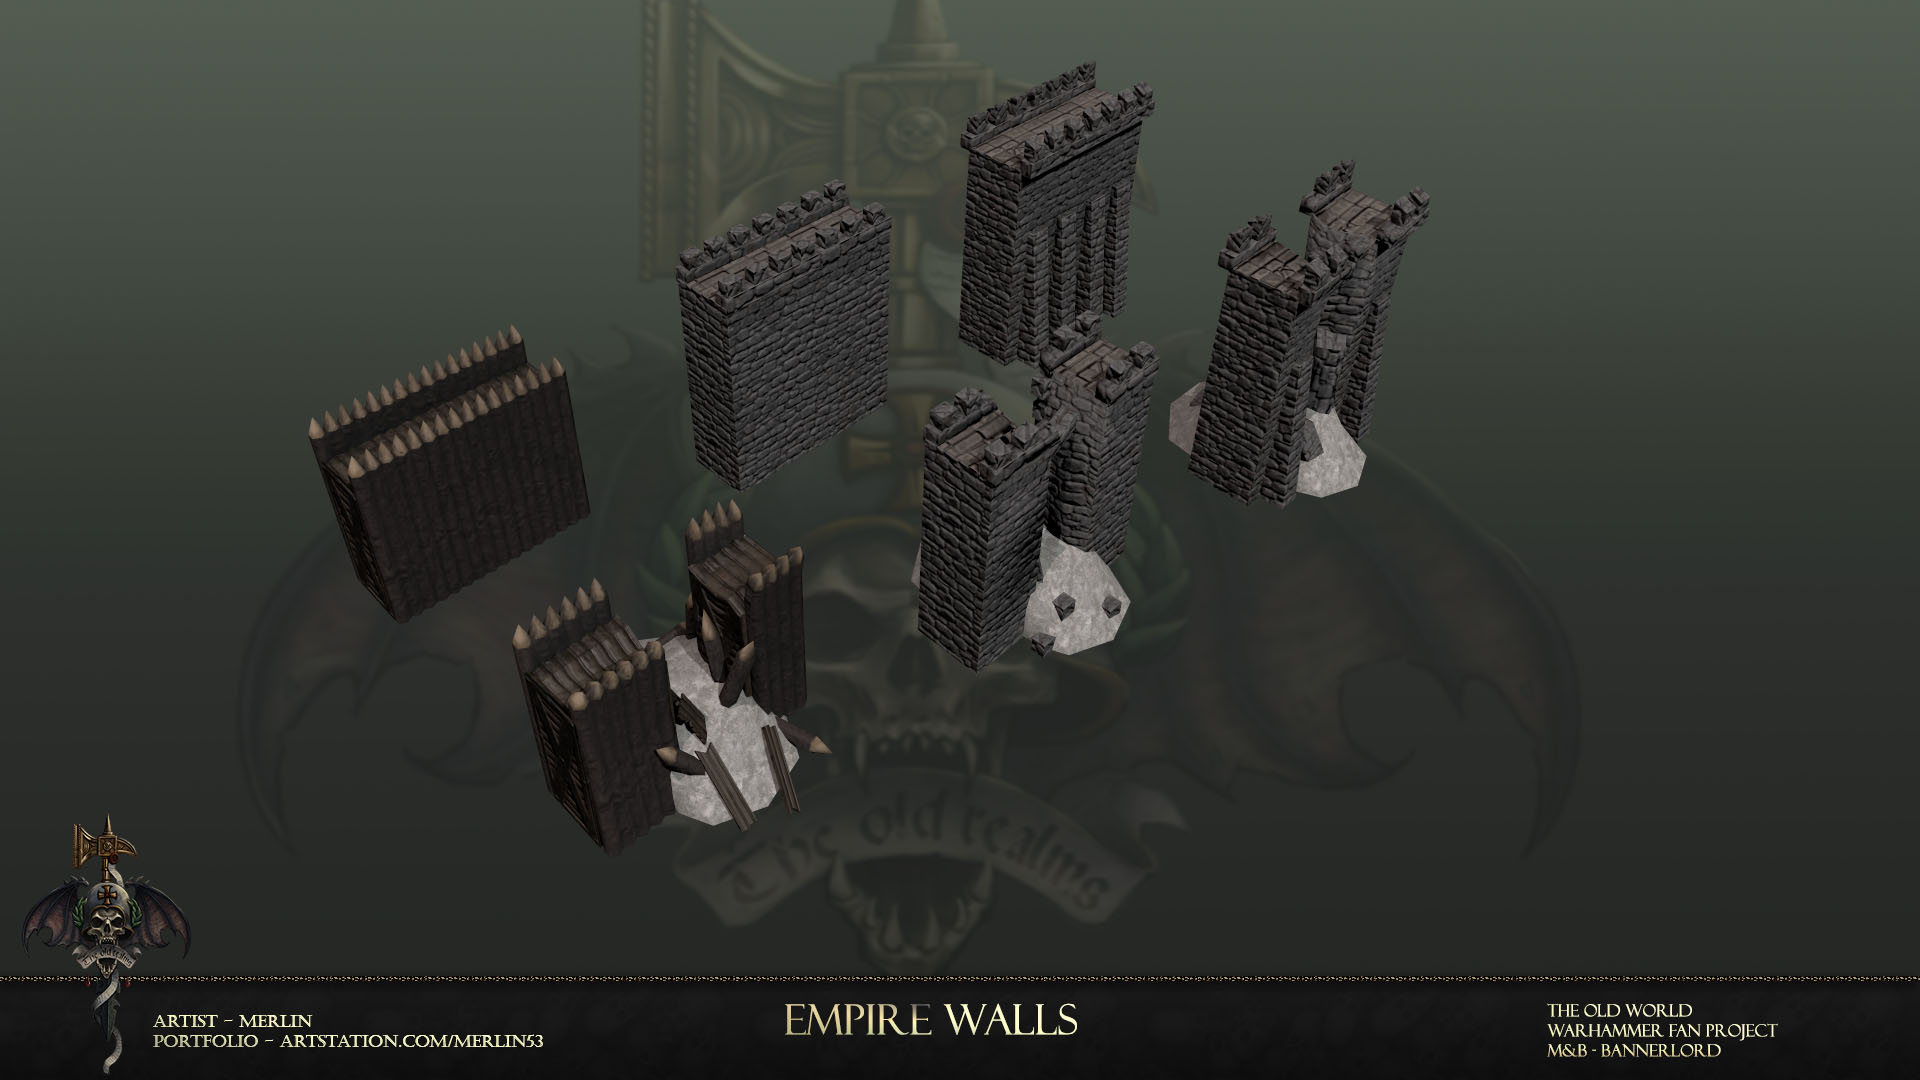 Empire walls